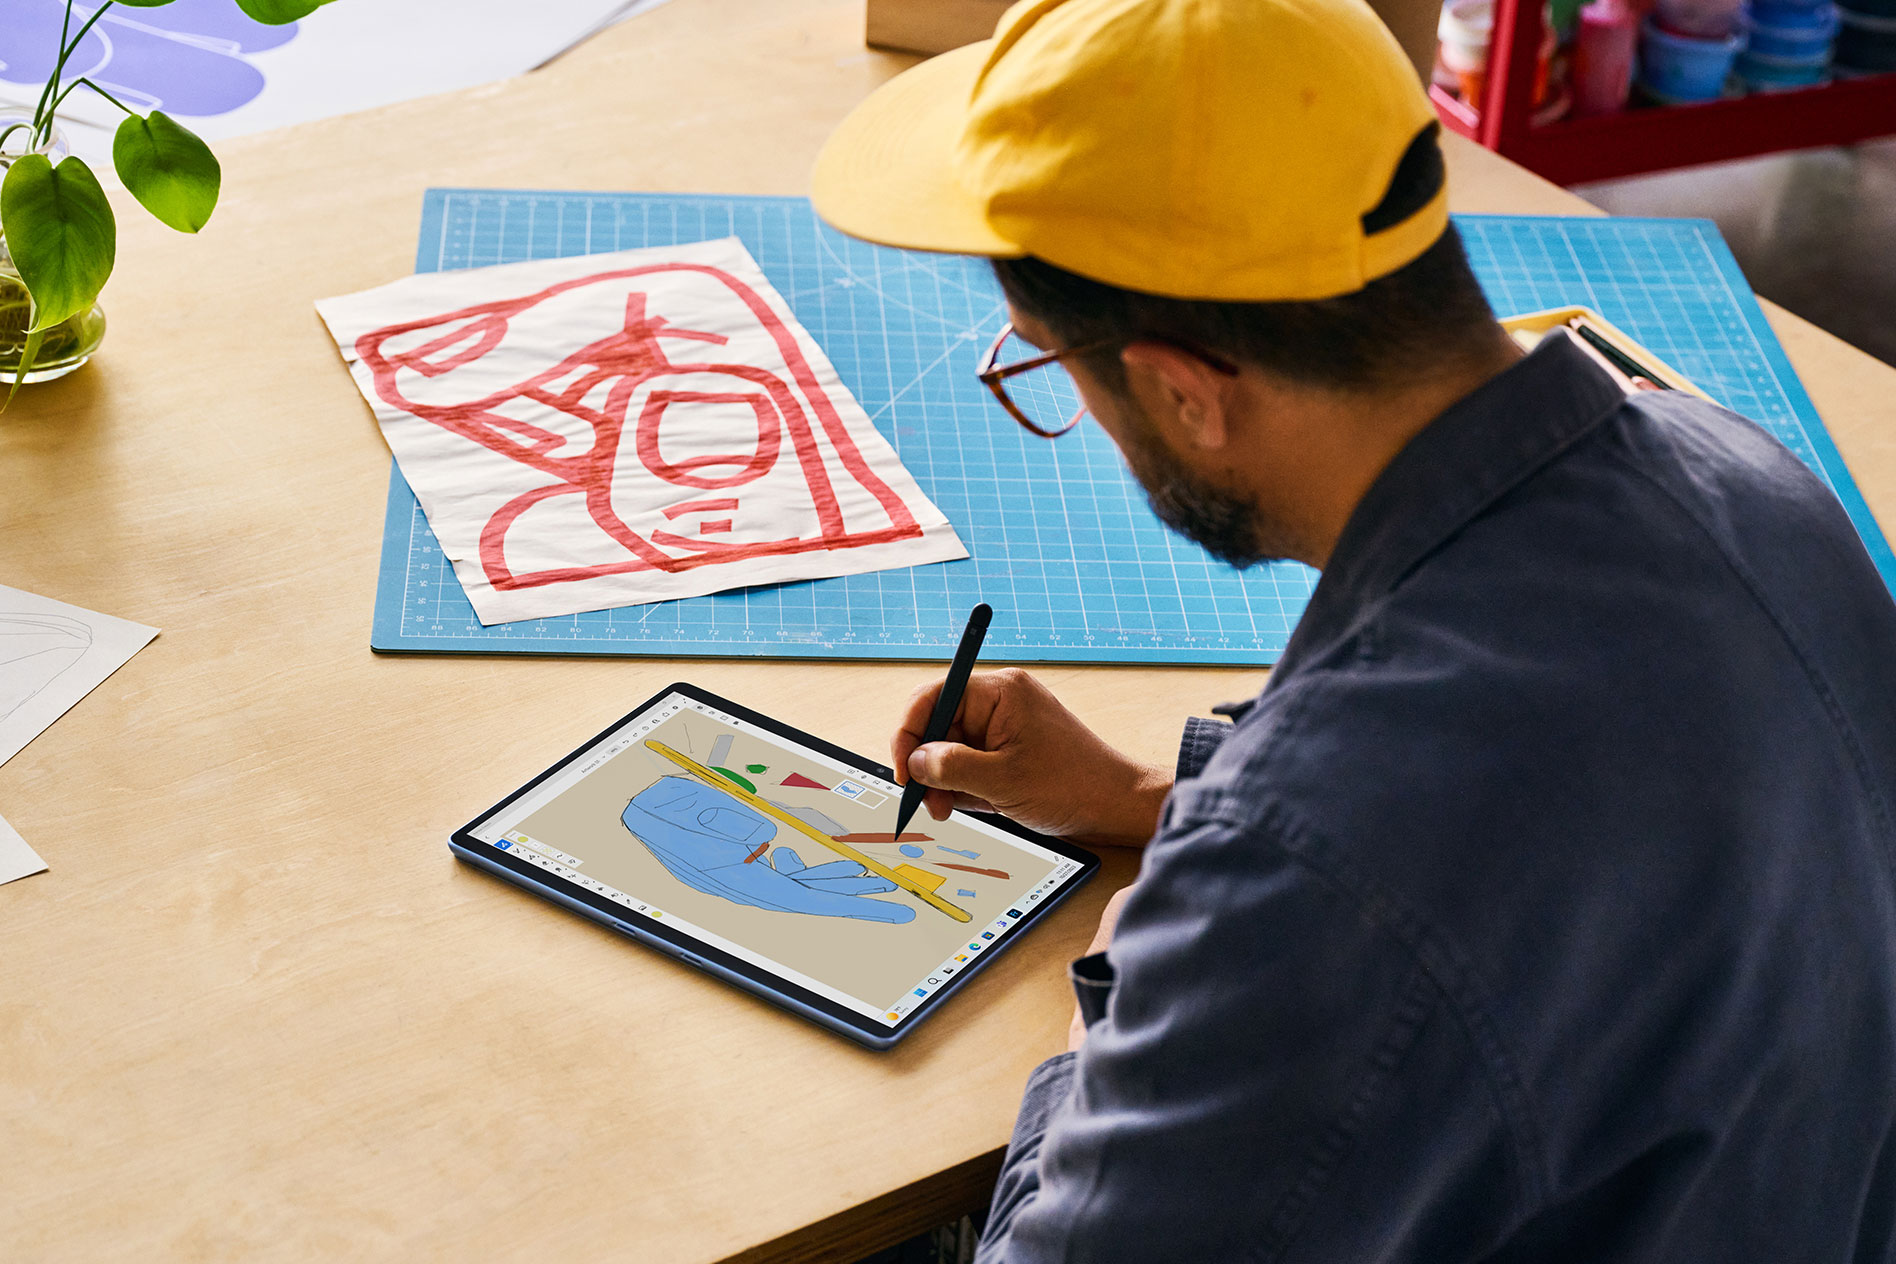 야구 모자를 쓰고 목재 탁자에 앉아 태블릿 모드로 설정된 Surface Pro 9에서 Surface 슬림 펜 2로 그림을 그리는 남성